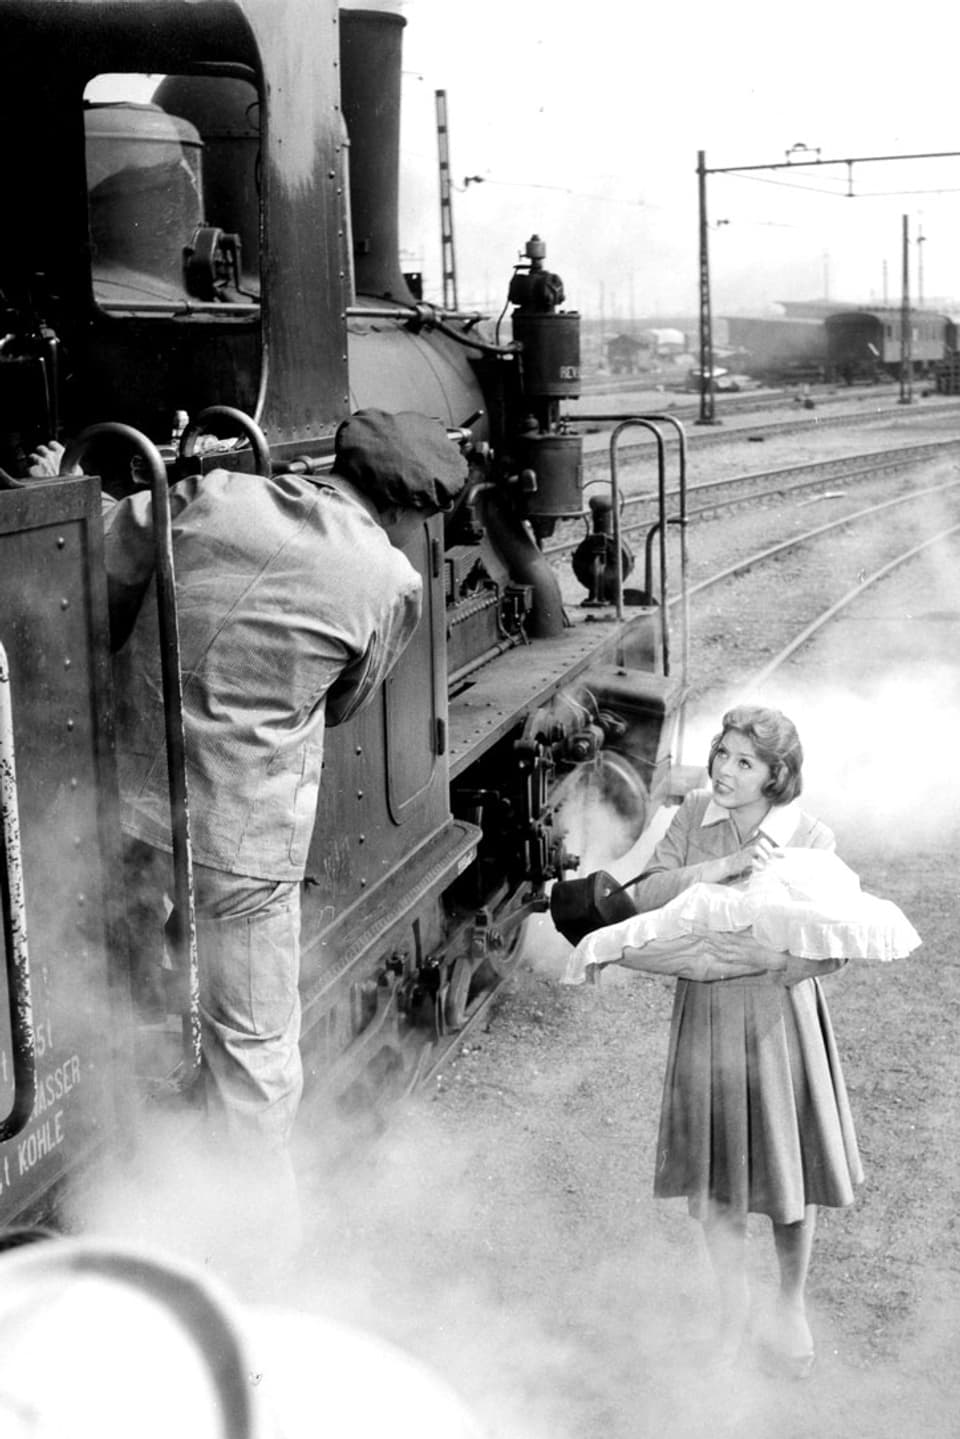 Eine Frau mit einem Säugling im Arm verabschiedet sich von einem Mann, der im Zug davon fährt.